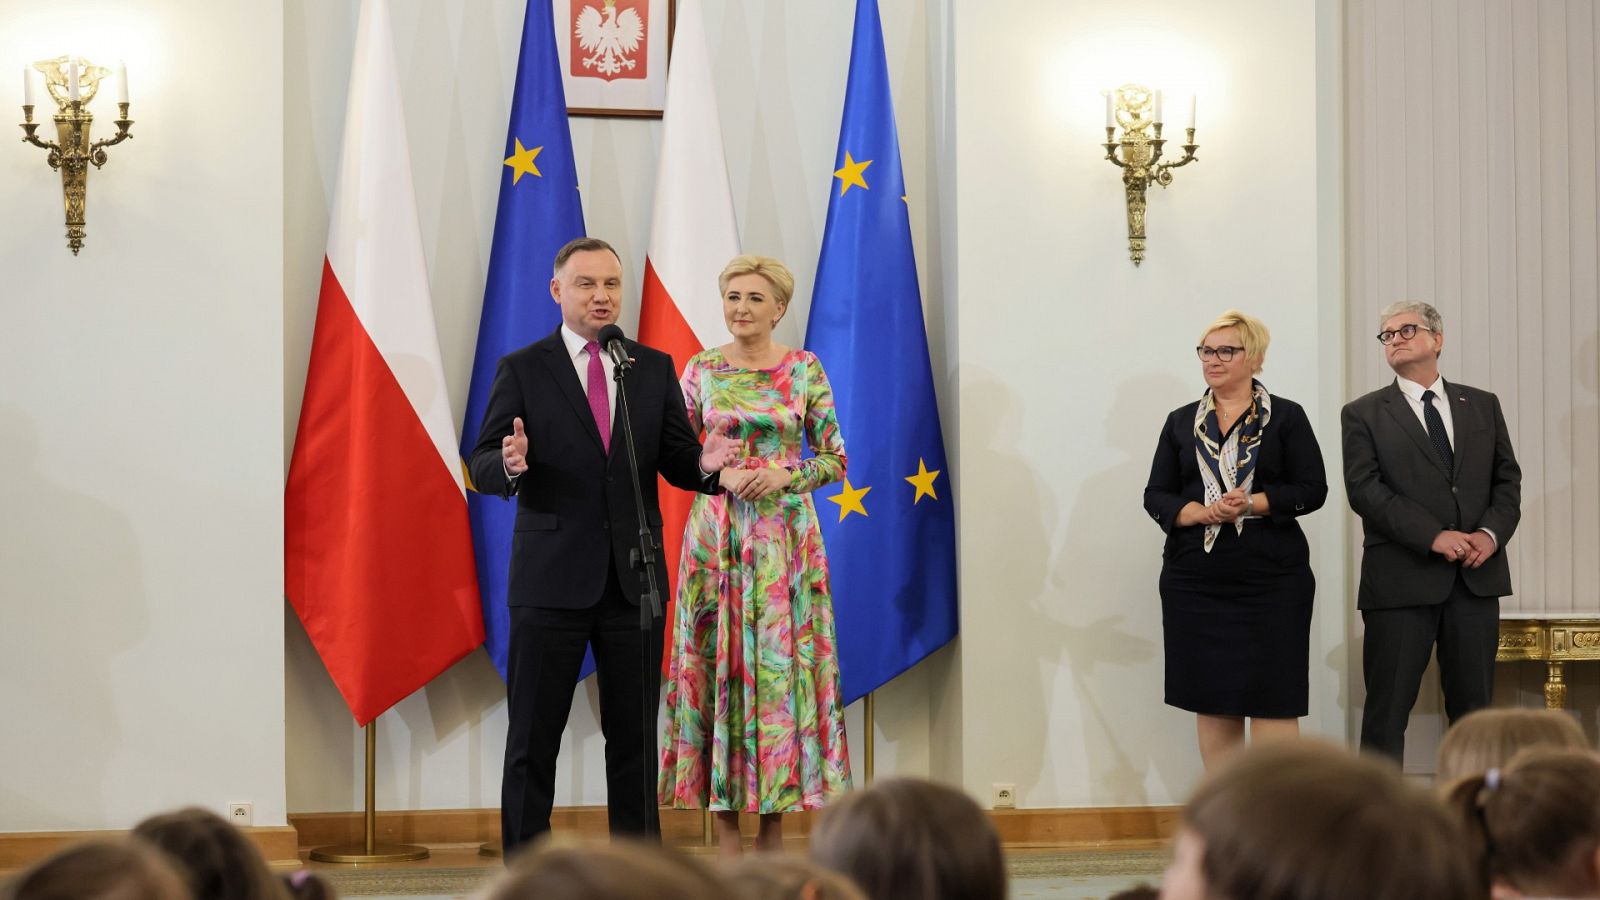 Imagen del presidente polaco Andrzej Duda acompañado de las banderas de la UE y Polonia